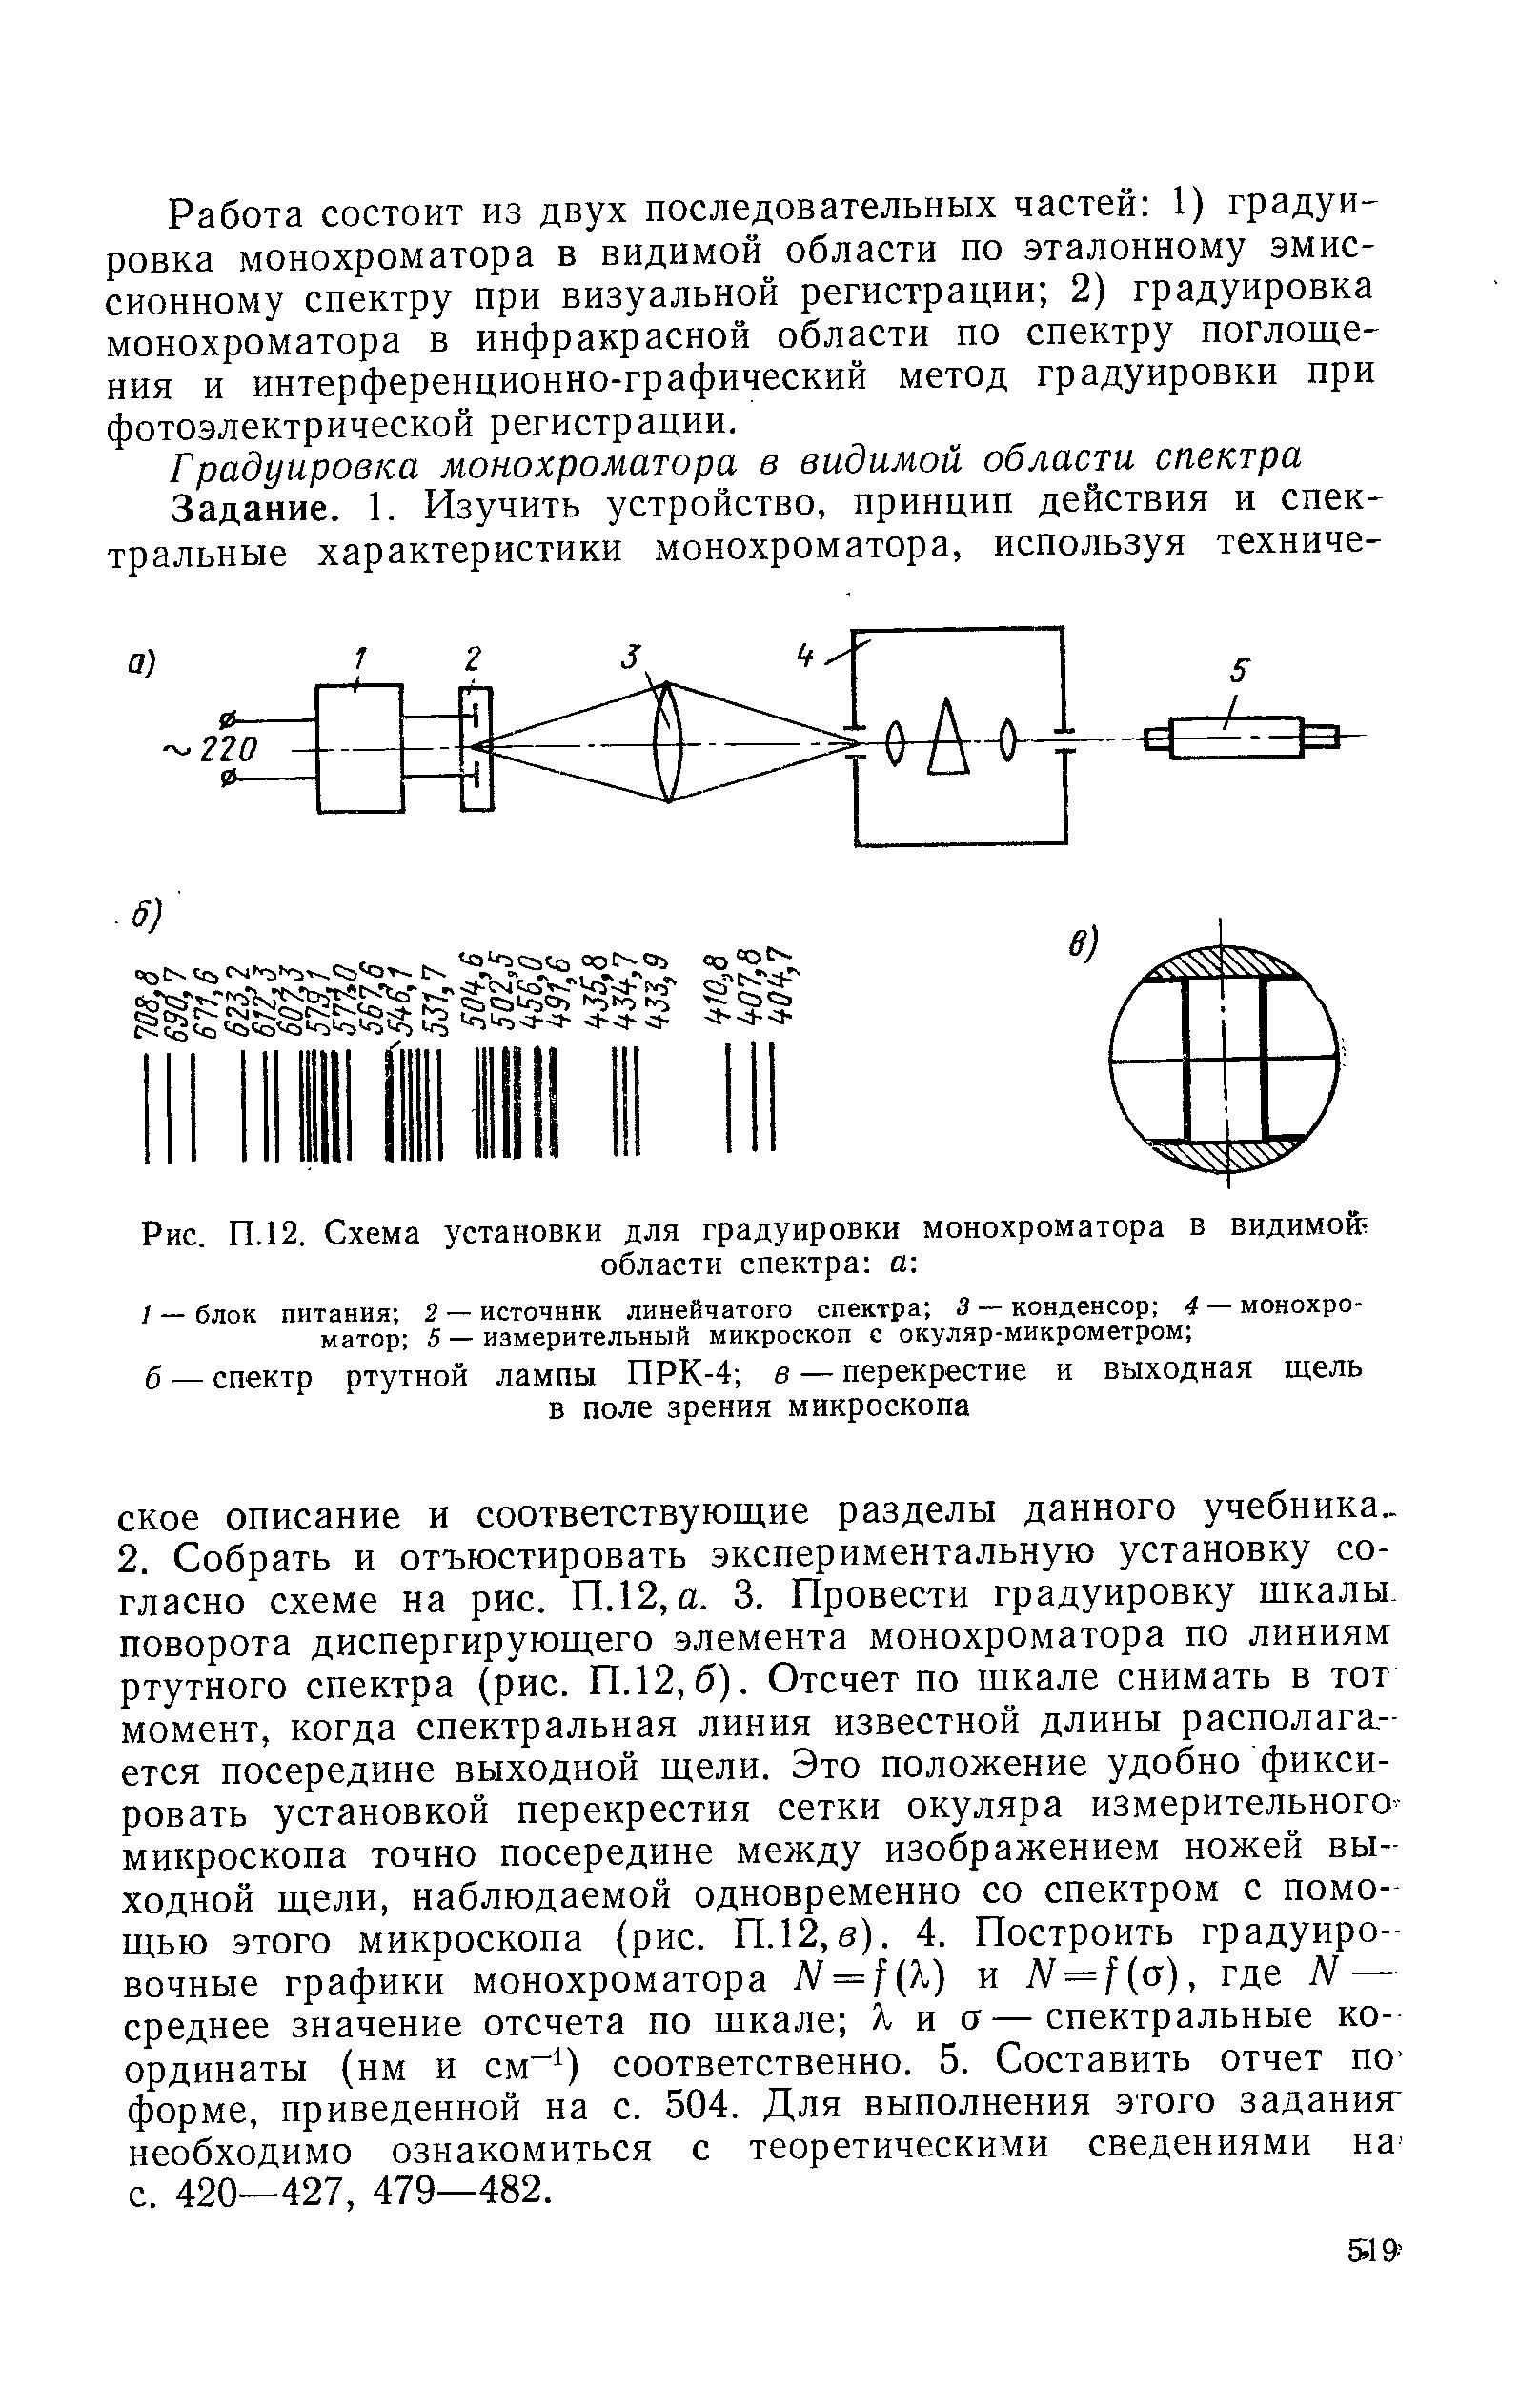 Рис. П. 12. Схема установки для градуировки монохроматора в видимой
